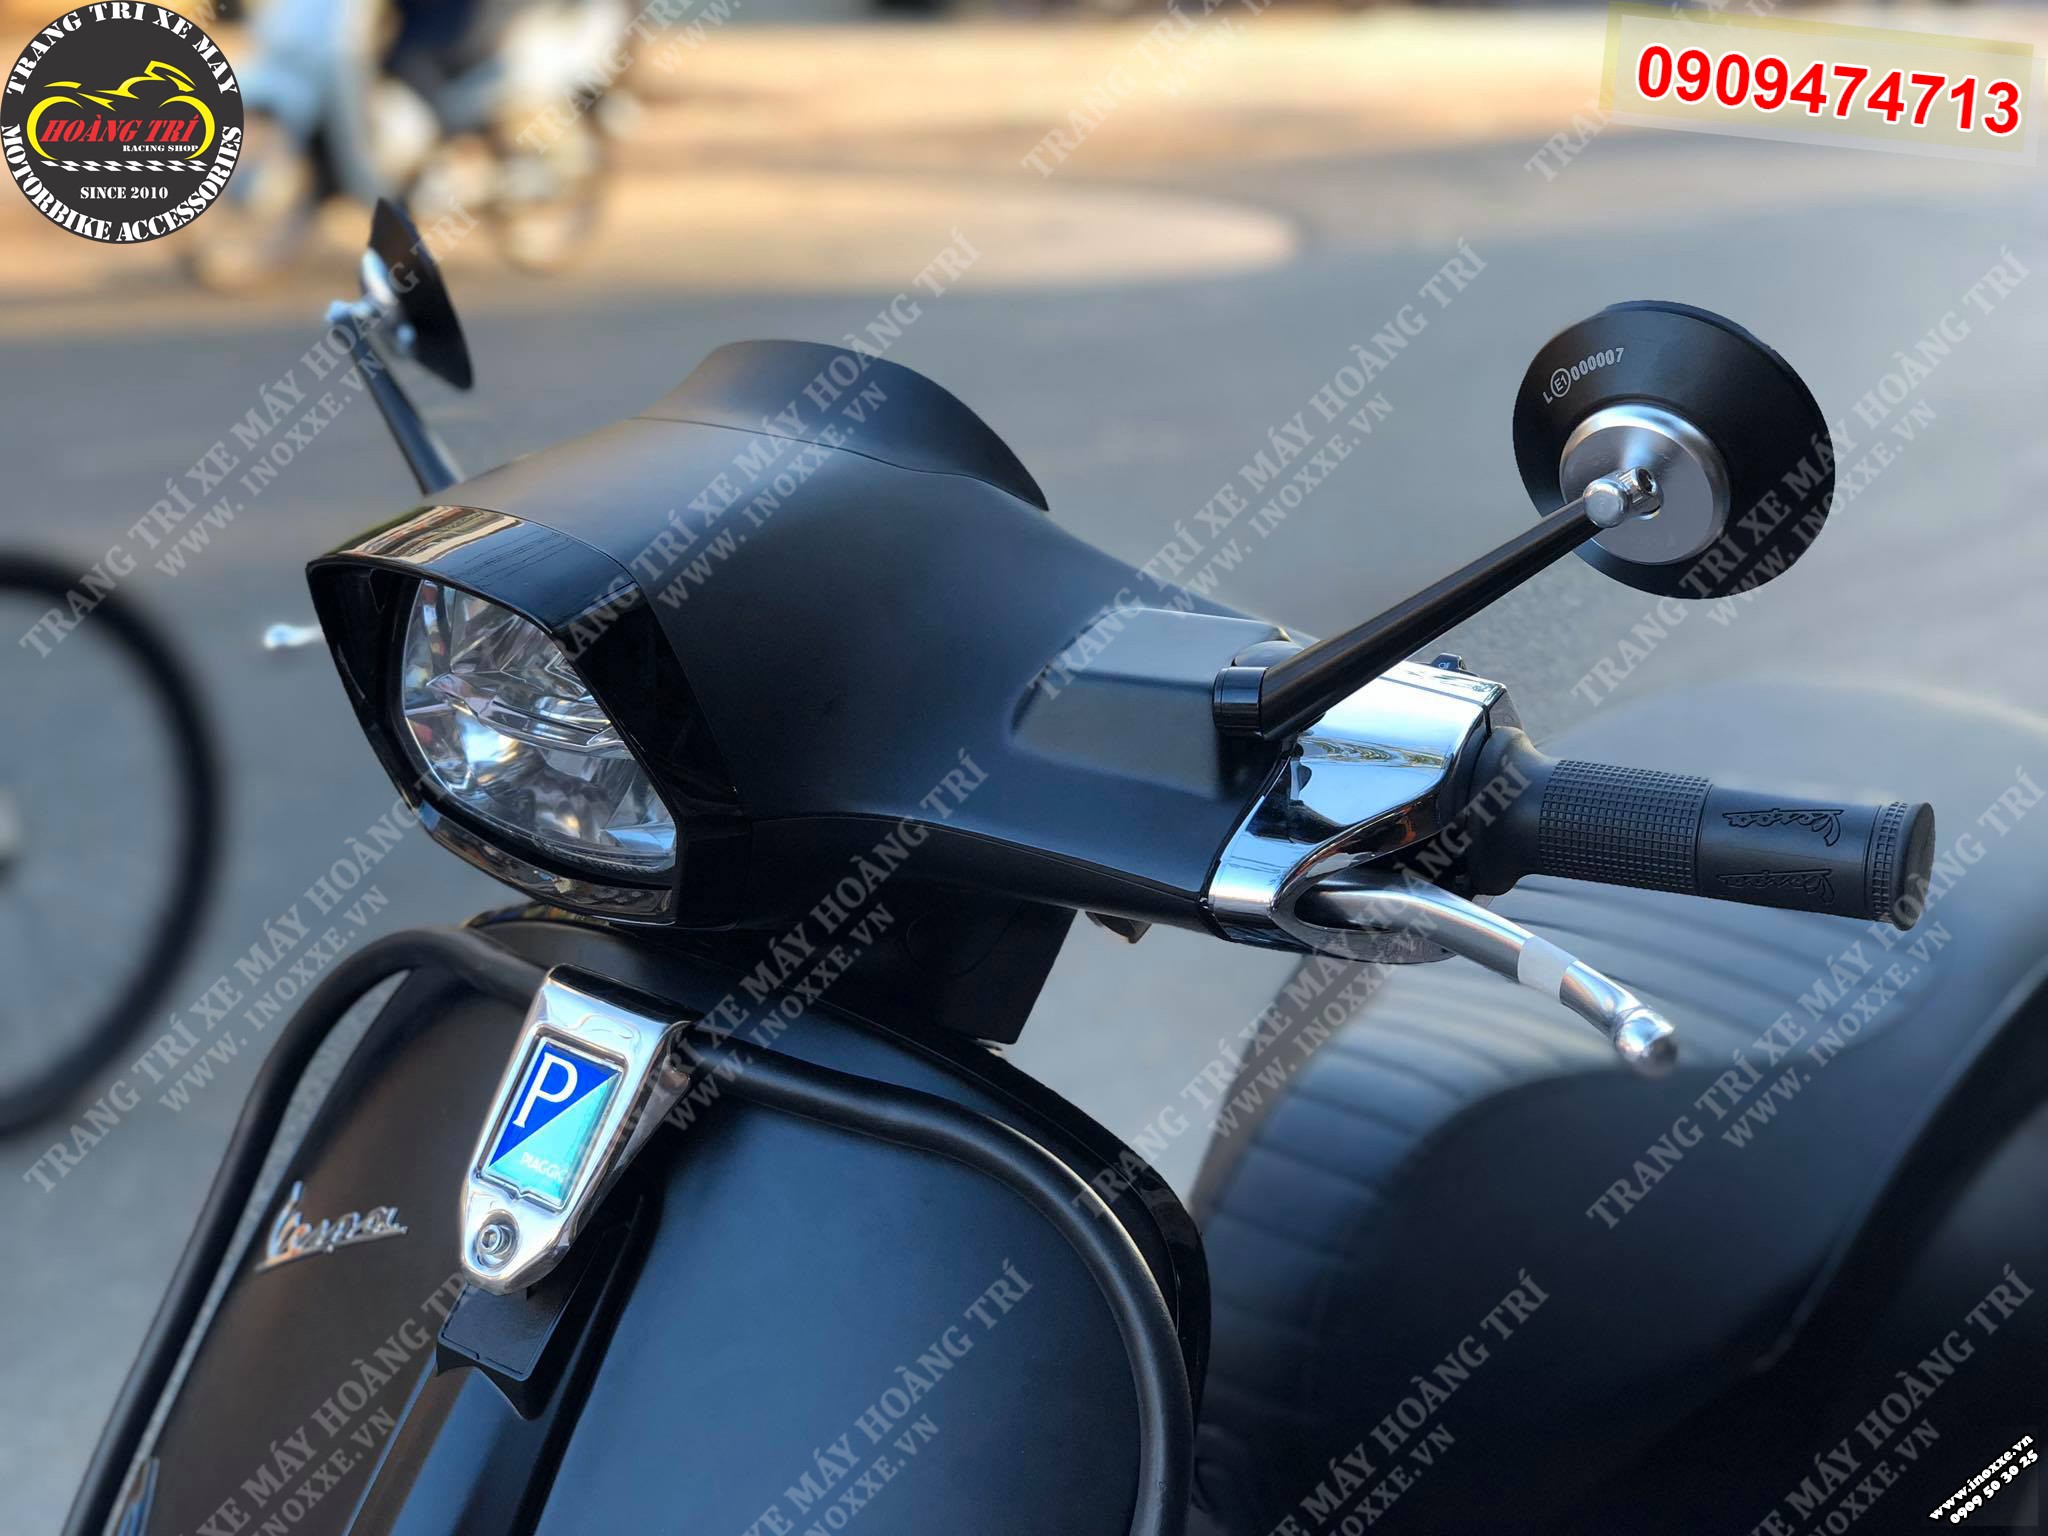 Kính Tròn Rizoma - kính hậu đẹp cho xe máy